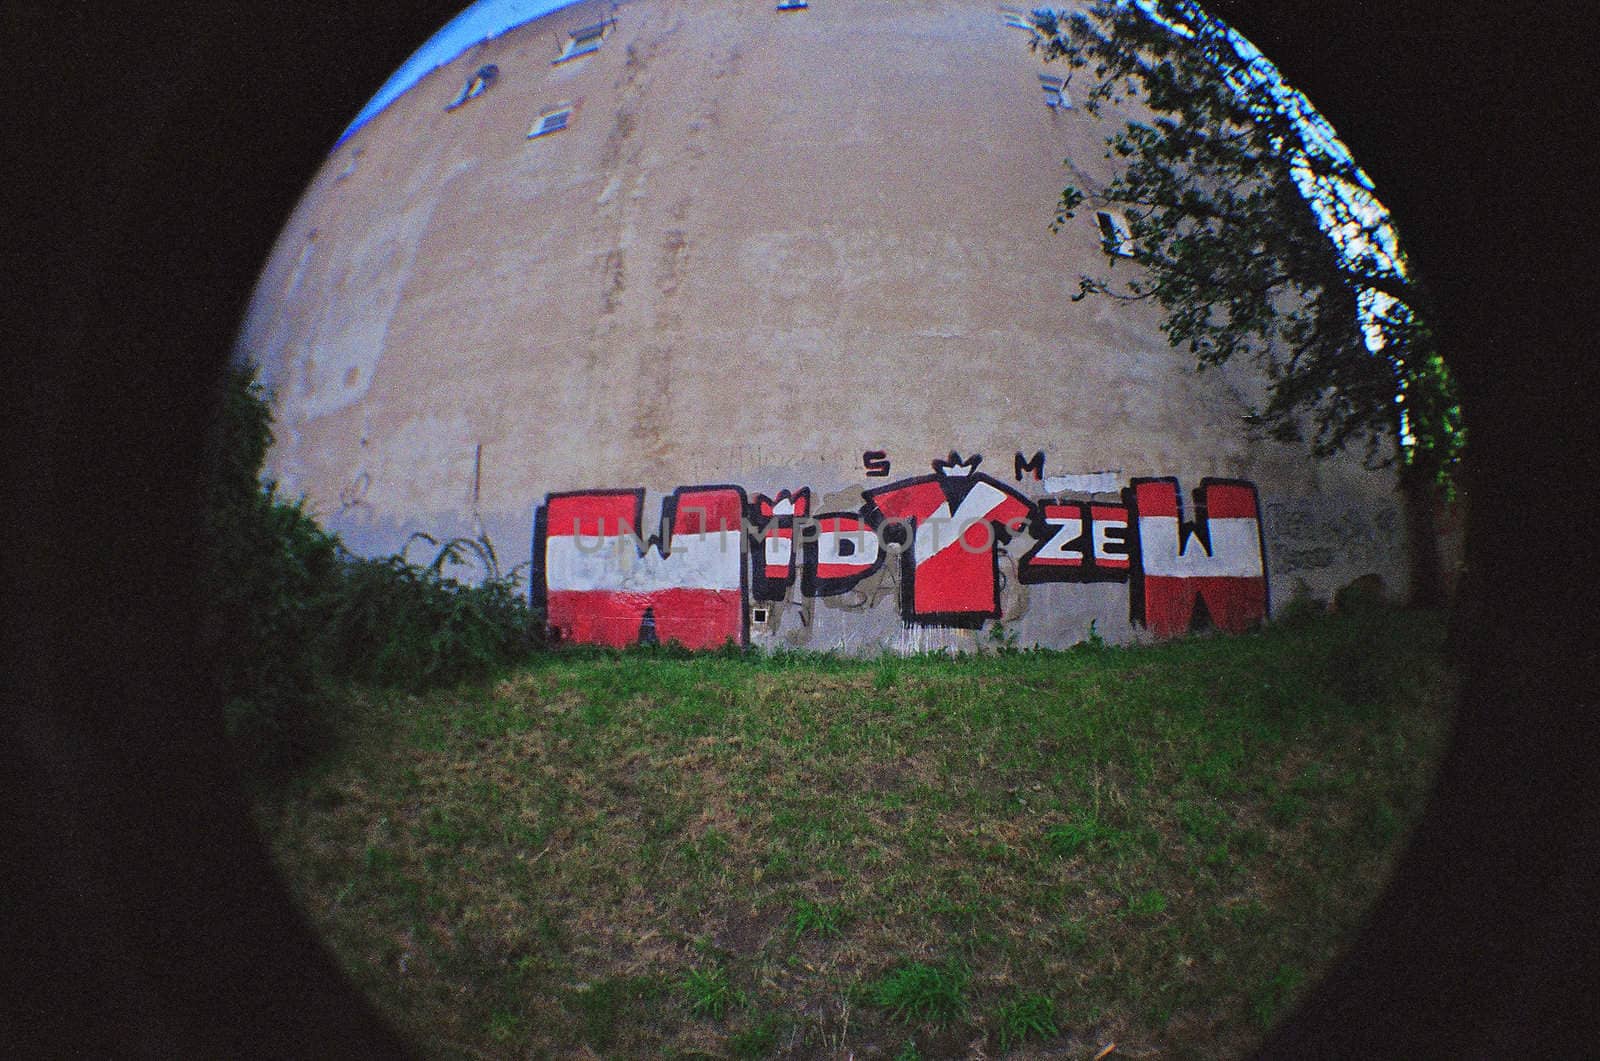 widzew graffity by fitec